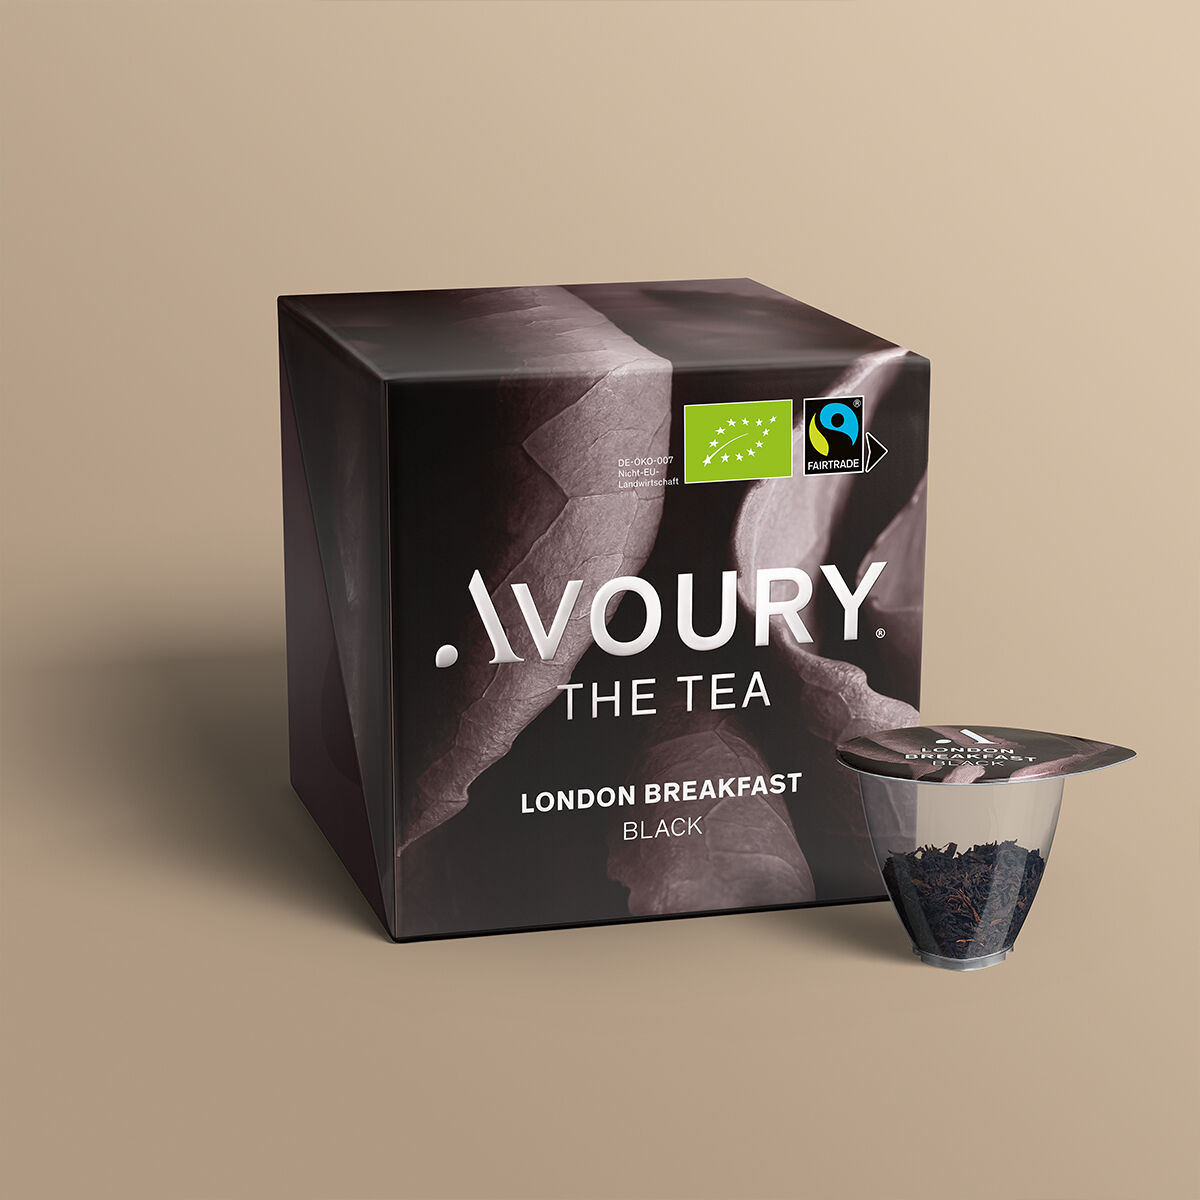 Avoury tea box with LONDON BREAKFAST tea